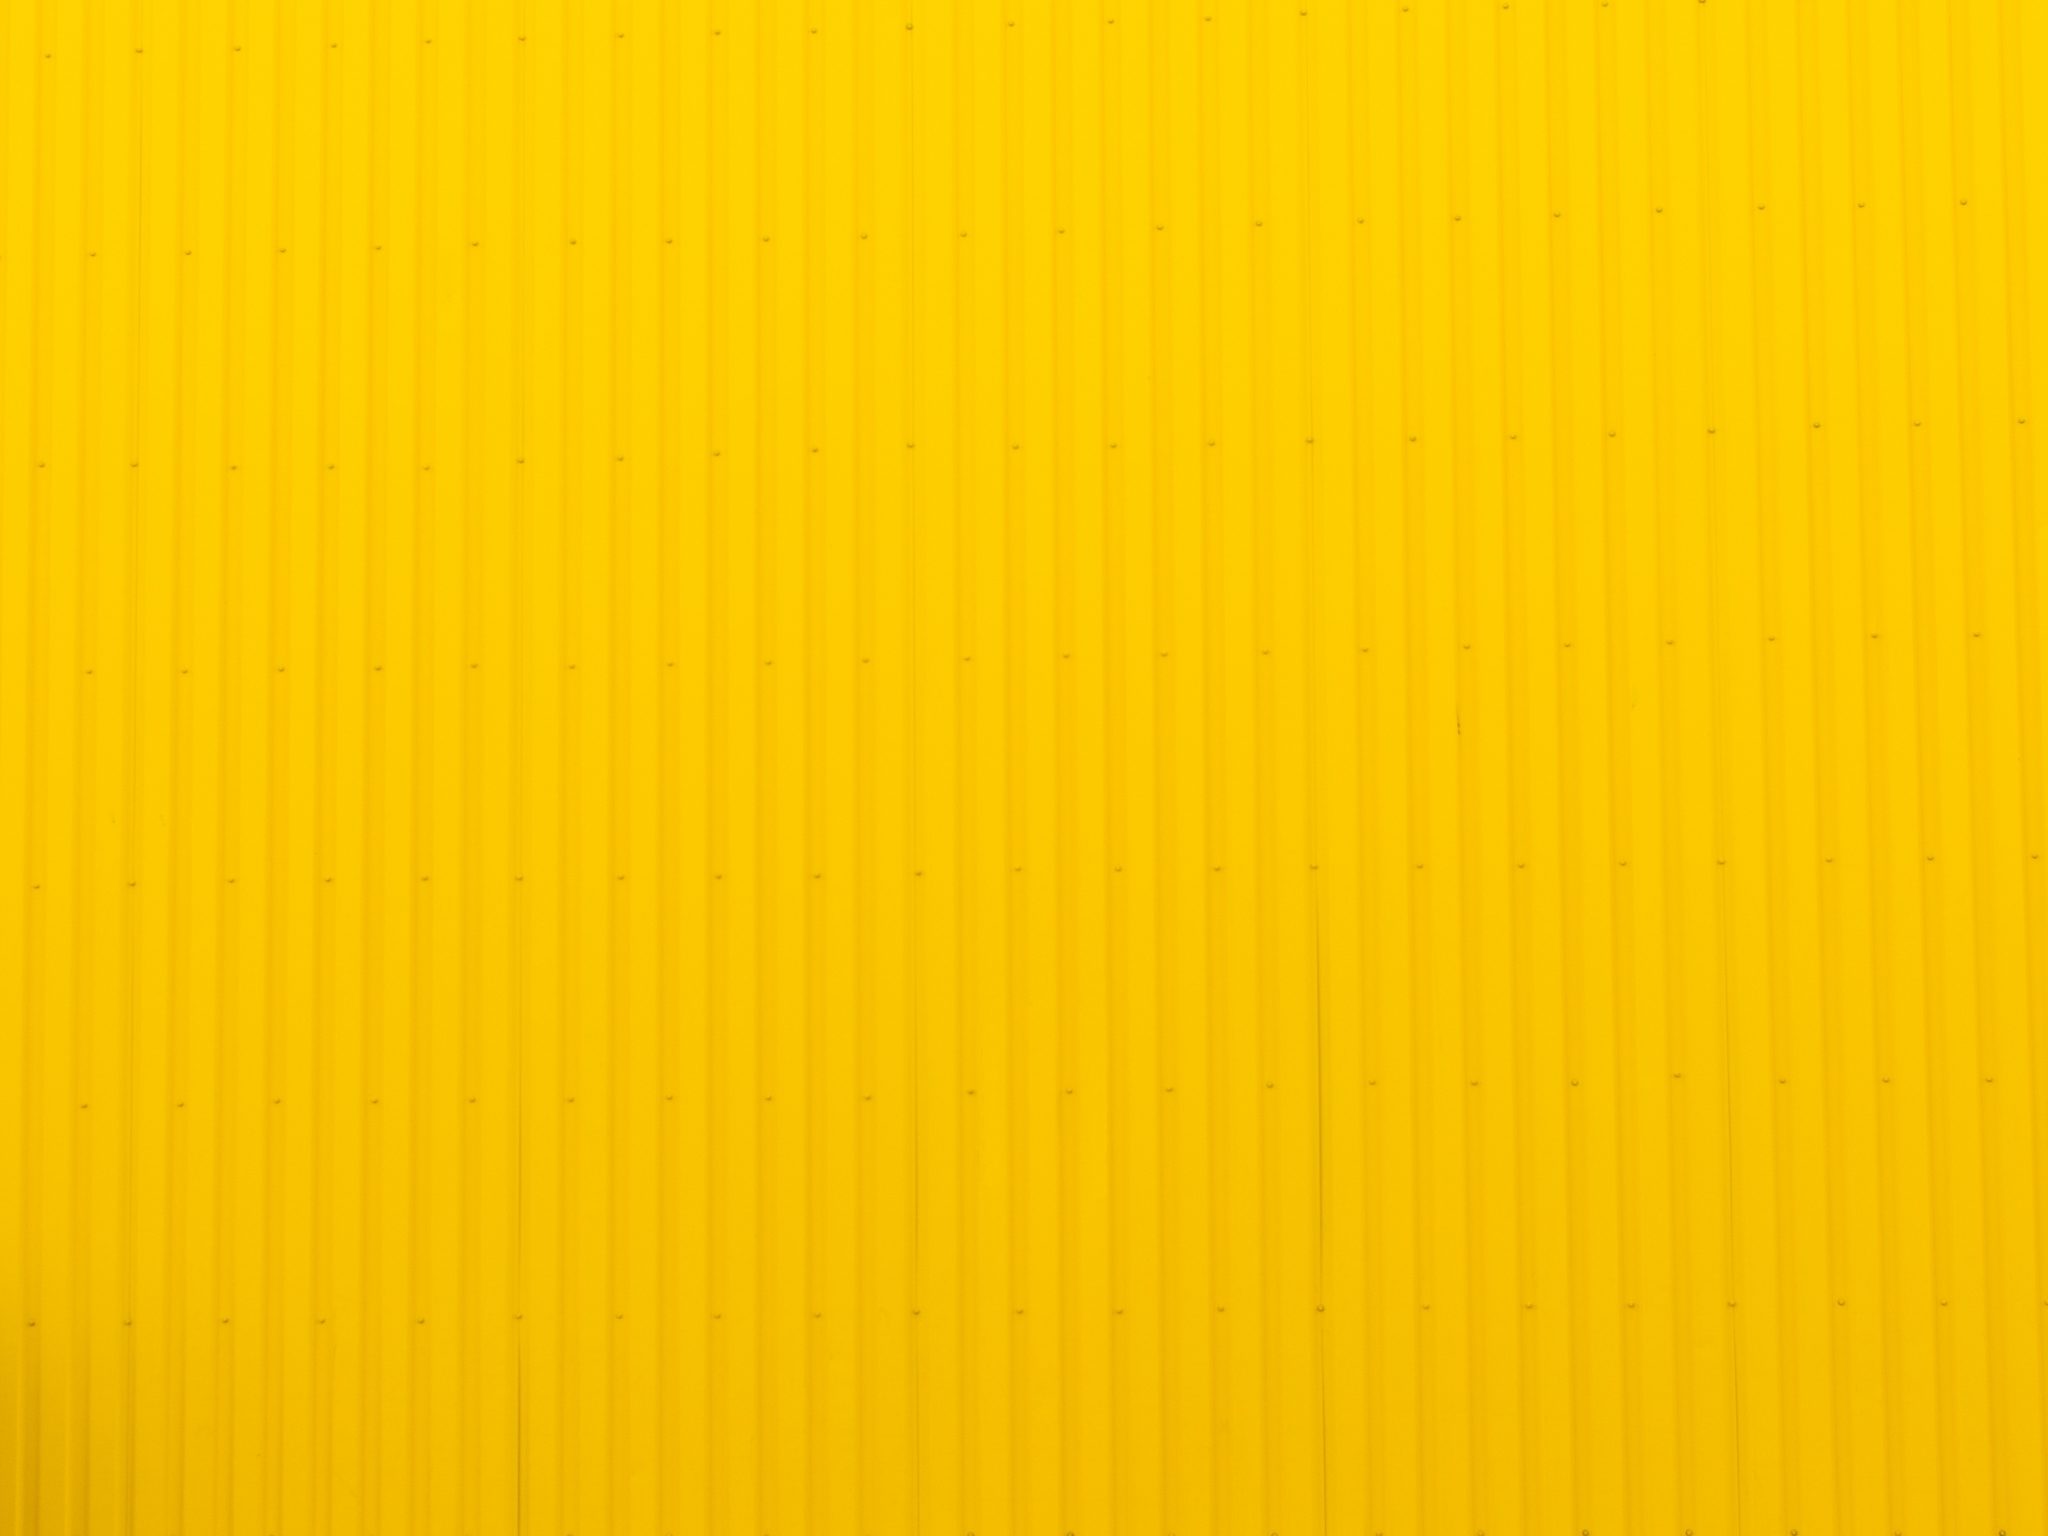 2048x1536 wallpaper Yellow Wall iPad Wallpaper 2048x1536 pixels resolution